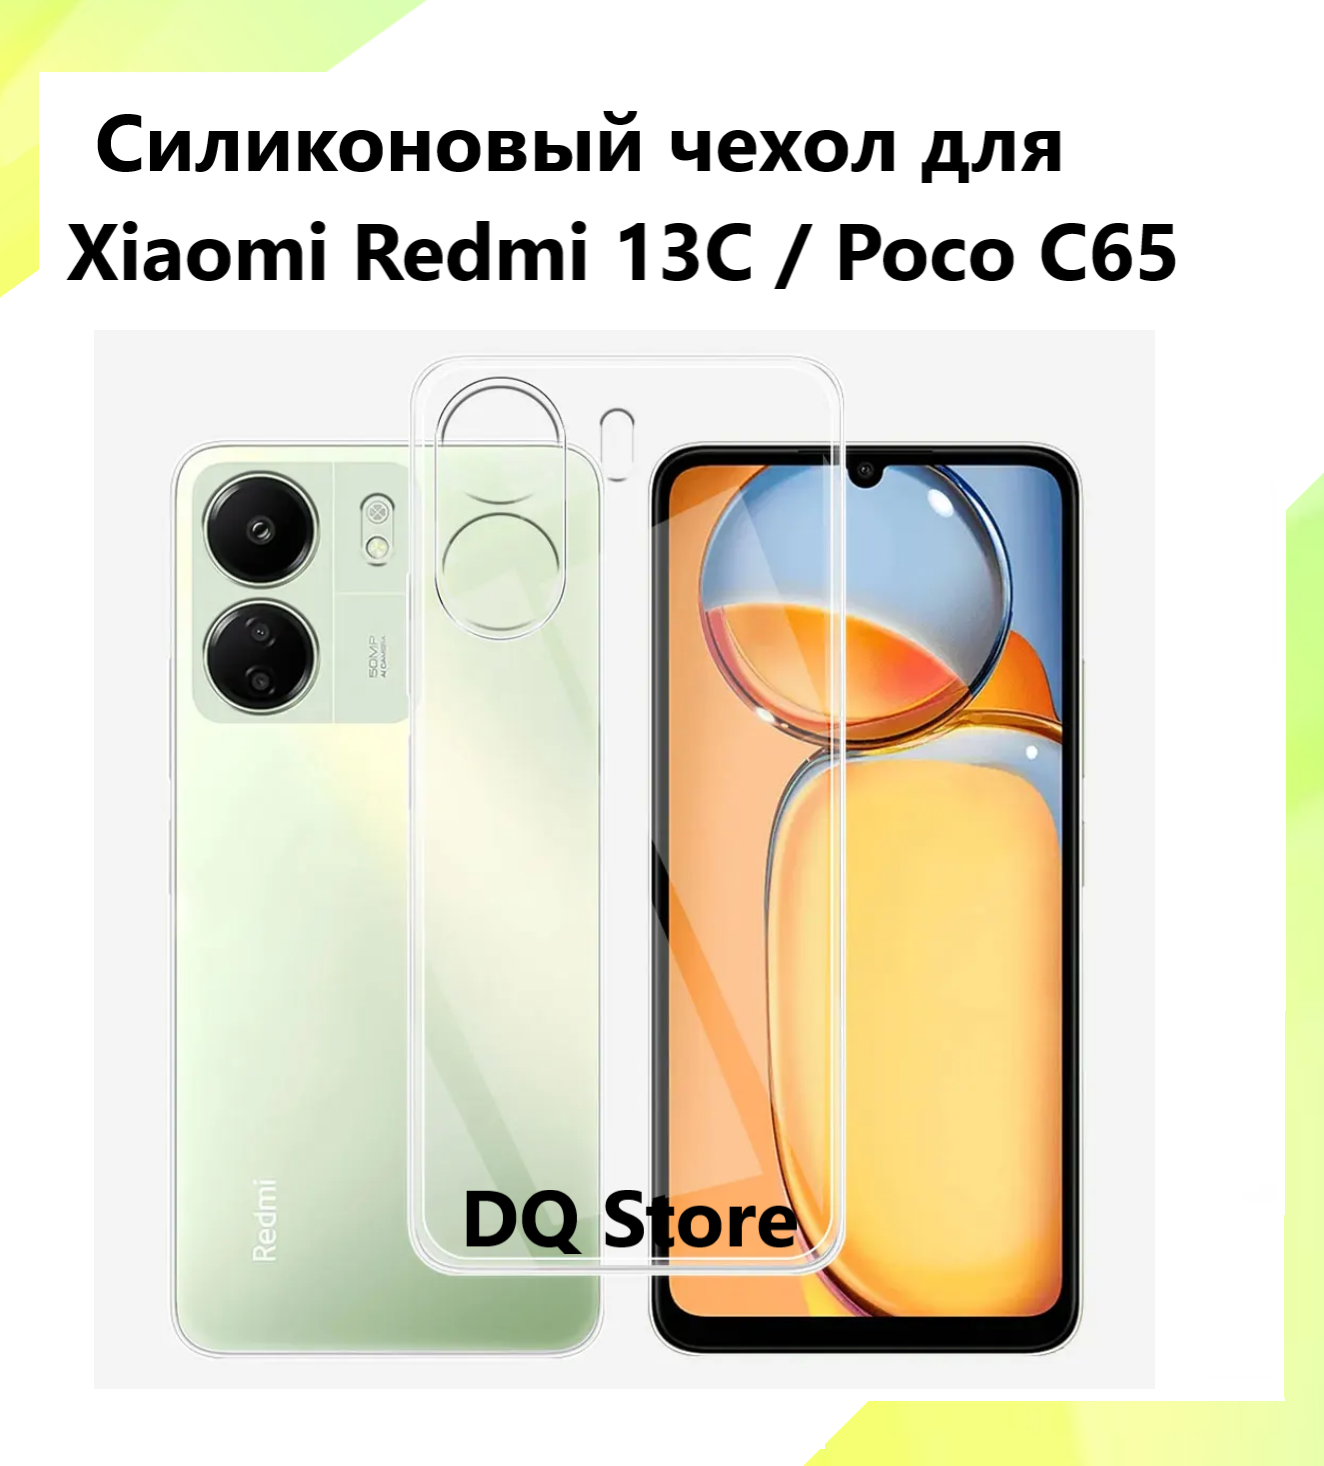 Прозрачный cиликоновый чехол для Xiaomi Redmi 13C / Poco C65 / Ксяоми Редми 13С / Поко С65 . Тонкий бампер с защитой камеры